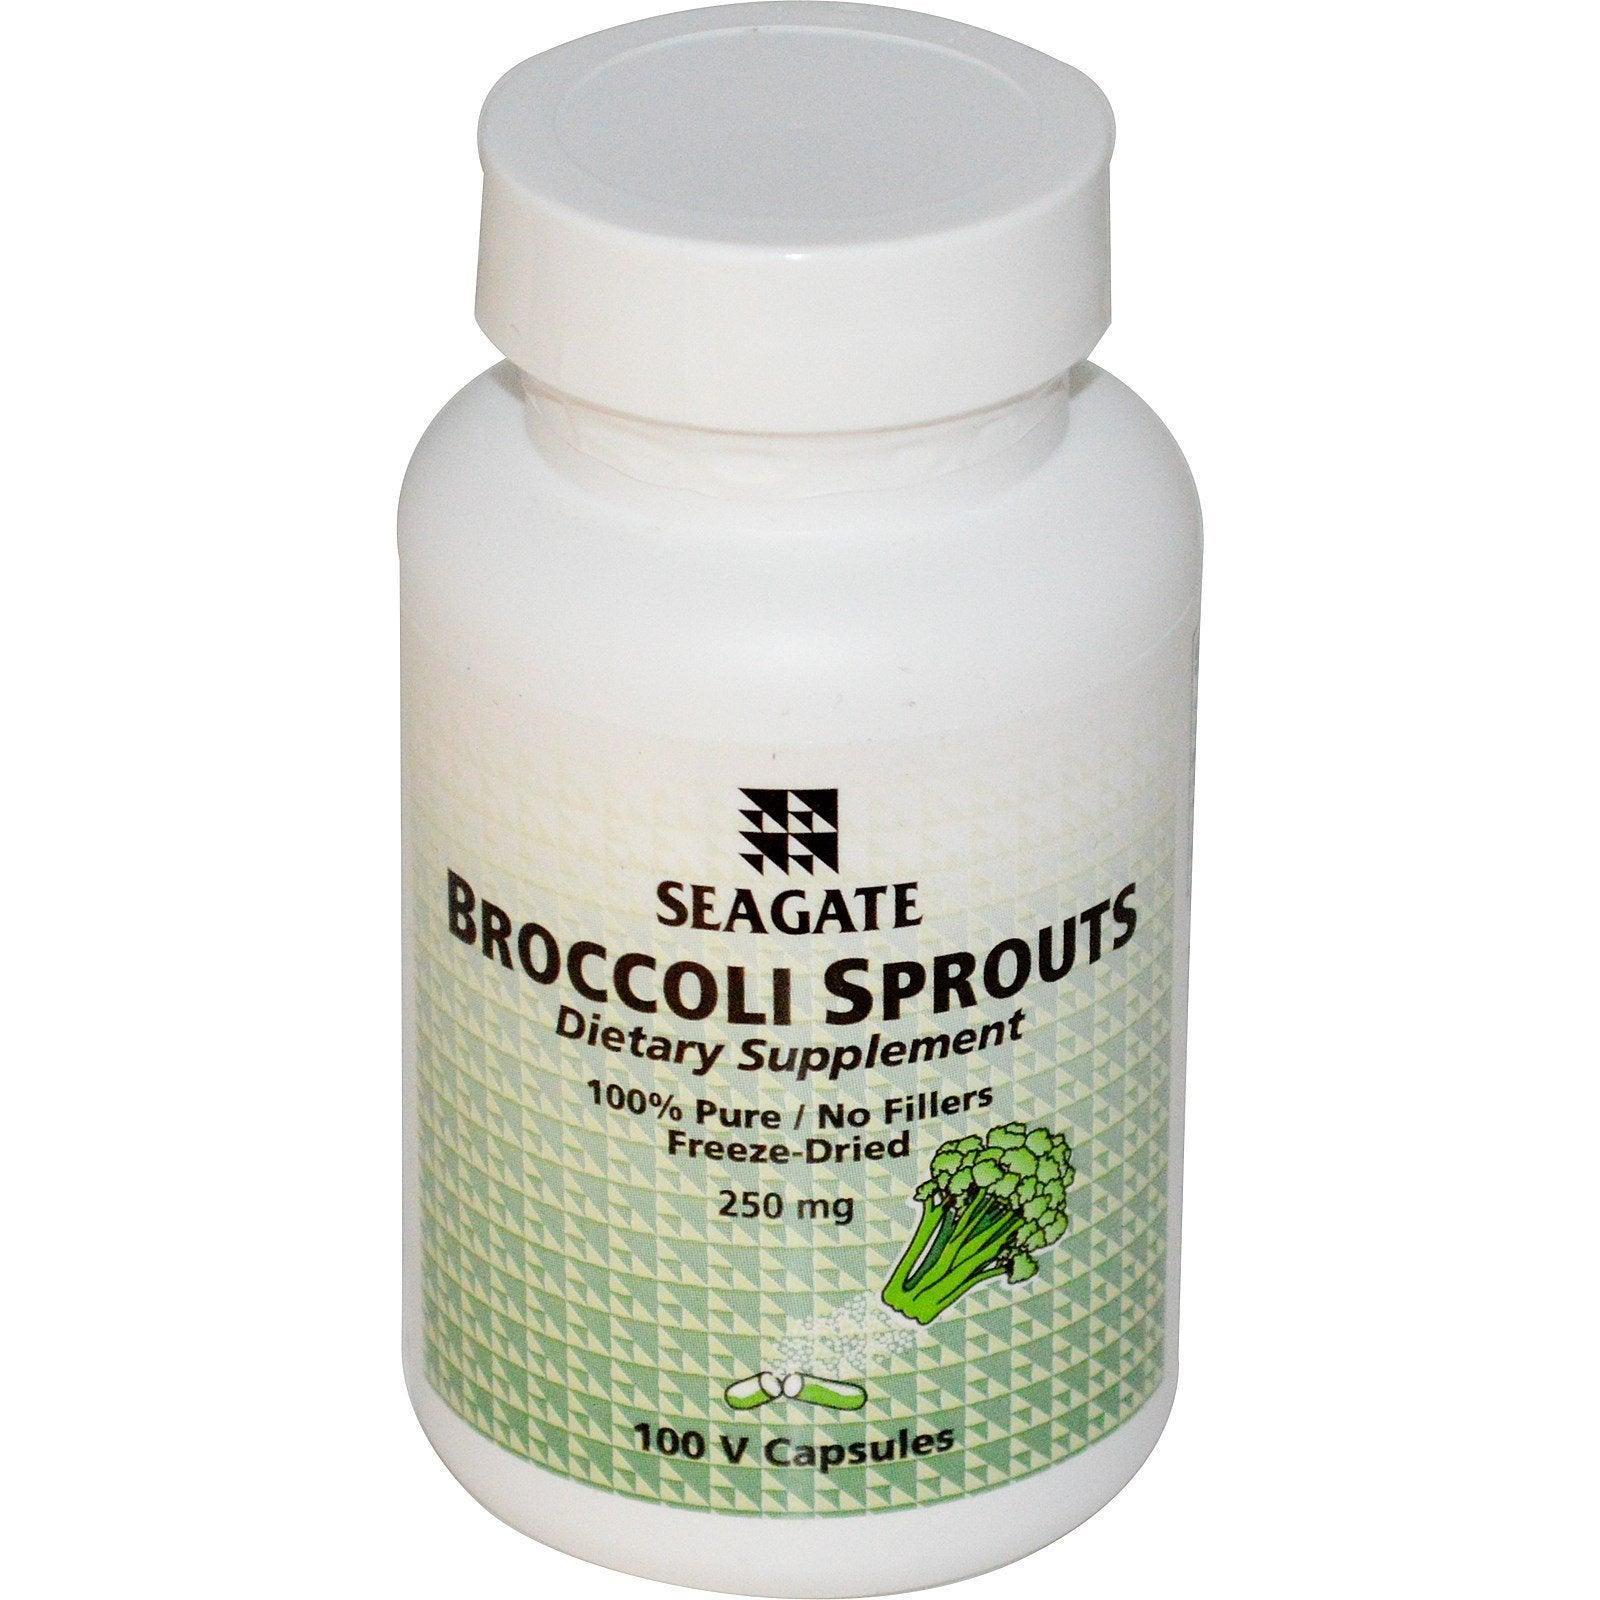 Seagate, Broccoli Sprouts, 250 mg, 100 Veggie Caps